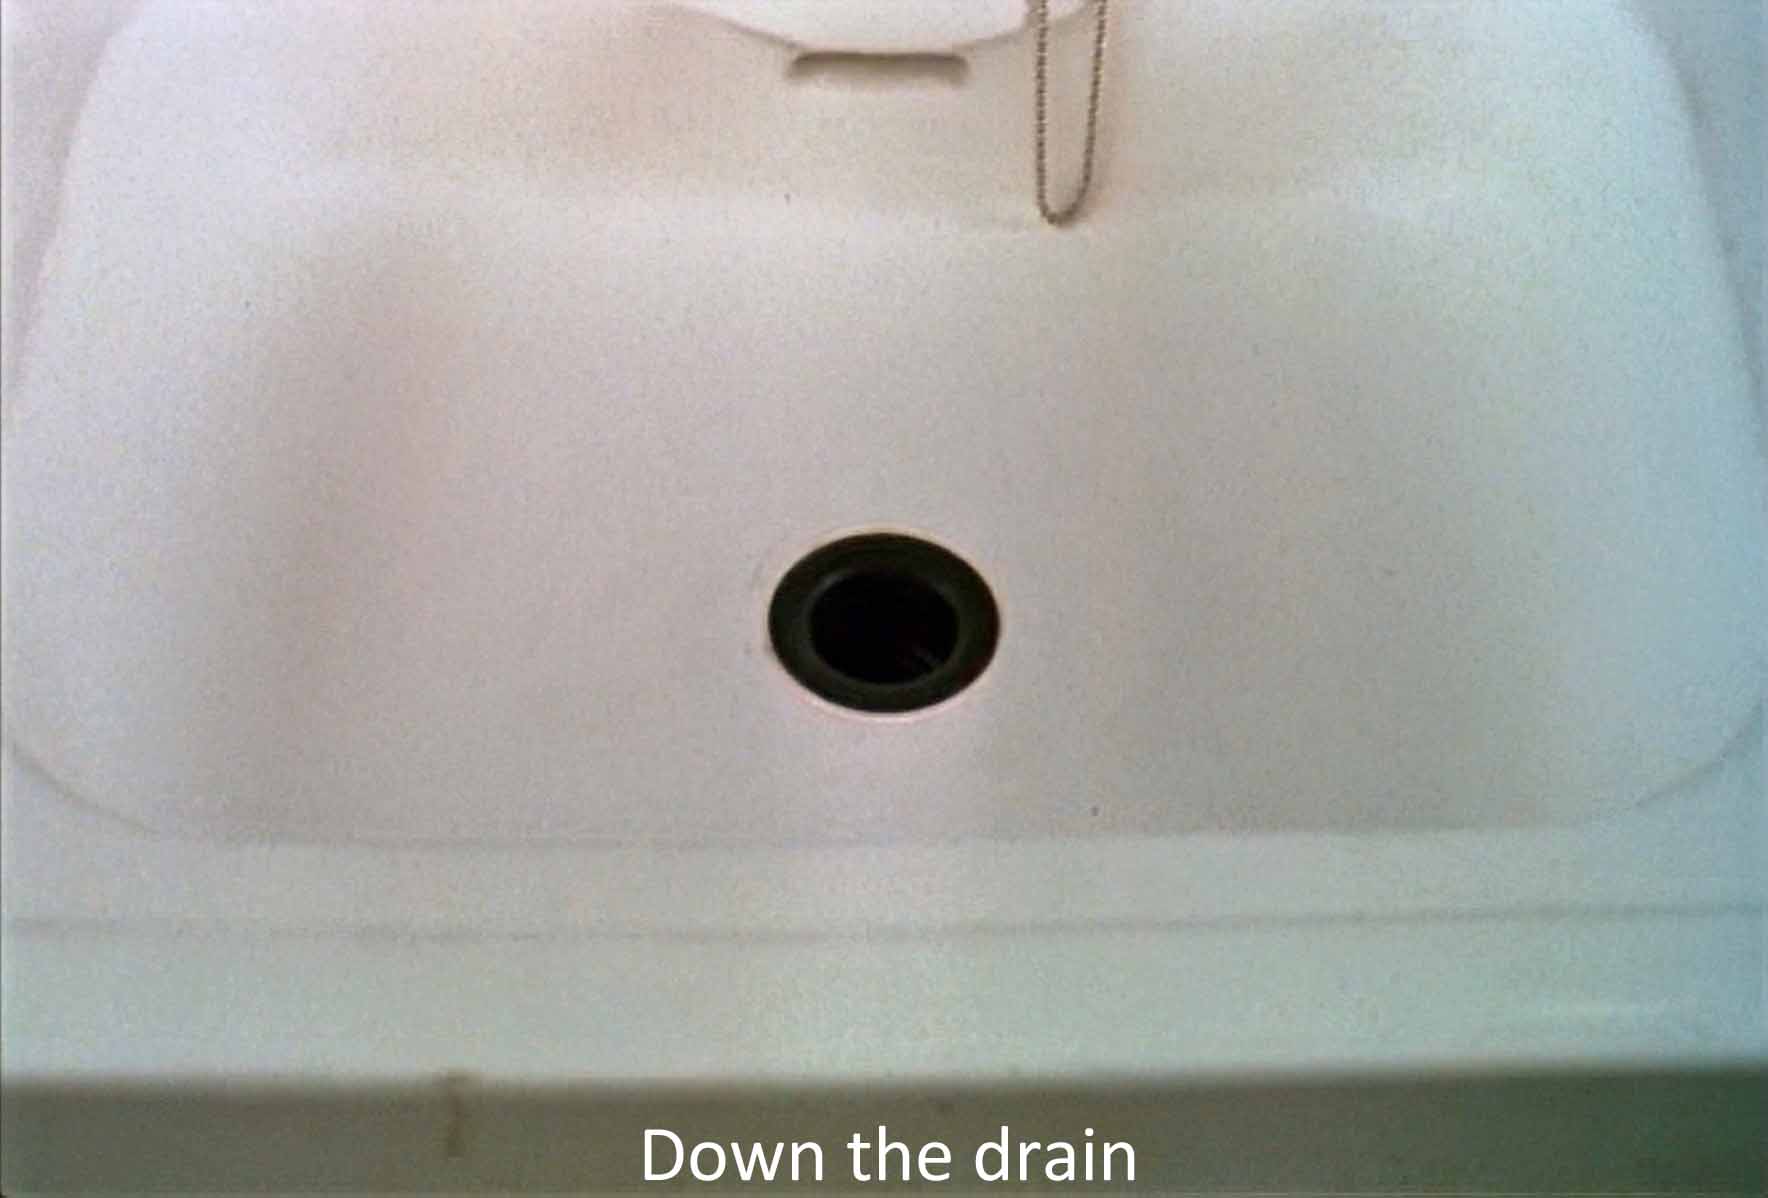 Down the drain